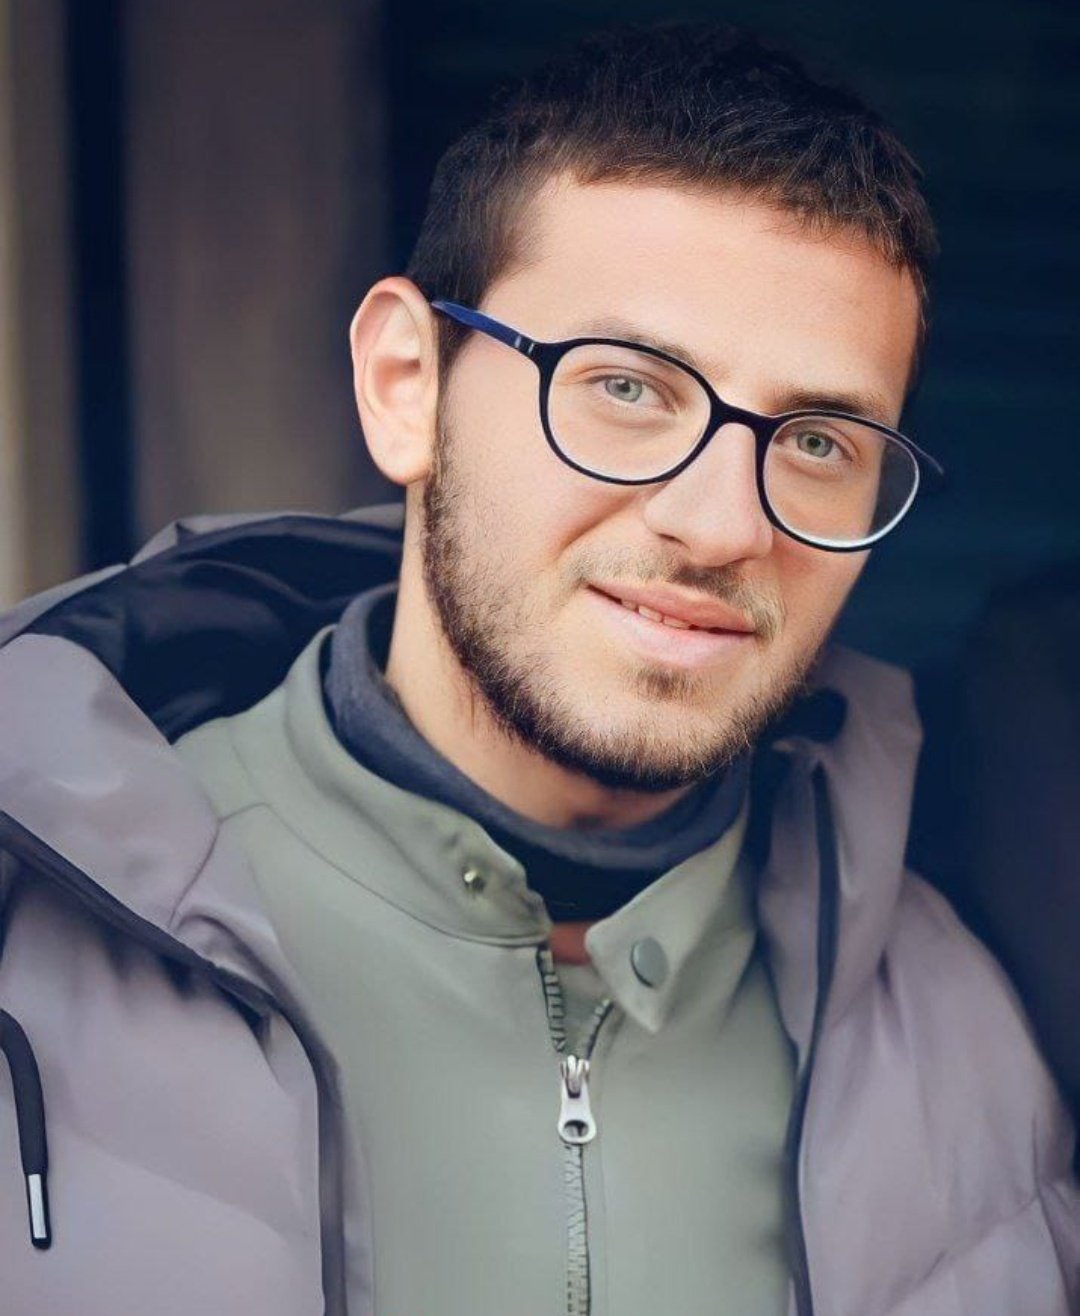 استشهاد الاسير محمد الهوارين من الظاهرية جنوب الخليل داخل سجون الاحتلال